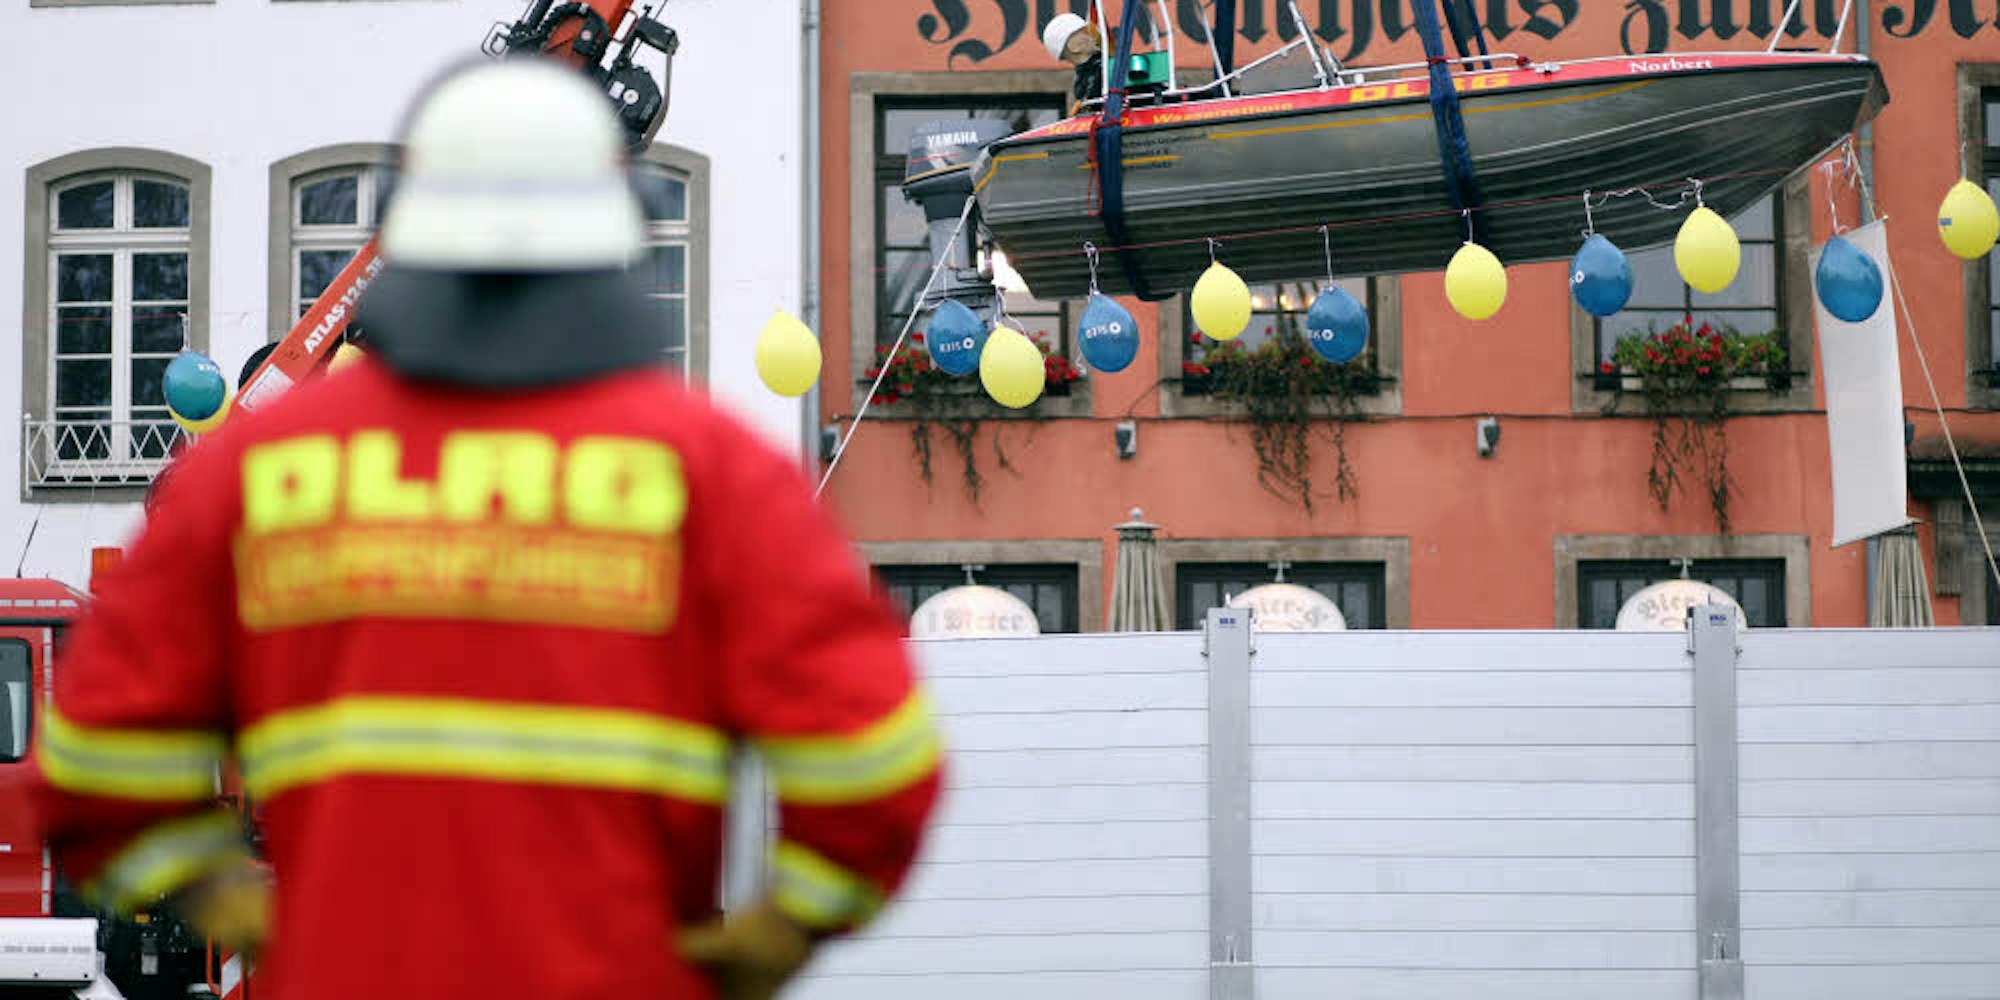 Ein Boot mit einer Puppe „schwimmt“ auf dem angenommenen Extremhochwasser in der Kölner Innenstadt, dessen Pegel die blauen und gelben Luftballons symbolisieren. Die graue Hochwasserschutzwand zeigt, bis zu welcher Höhe die Altstadt bisher geschützt ist.